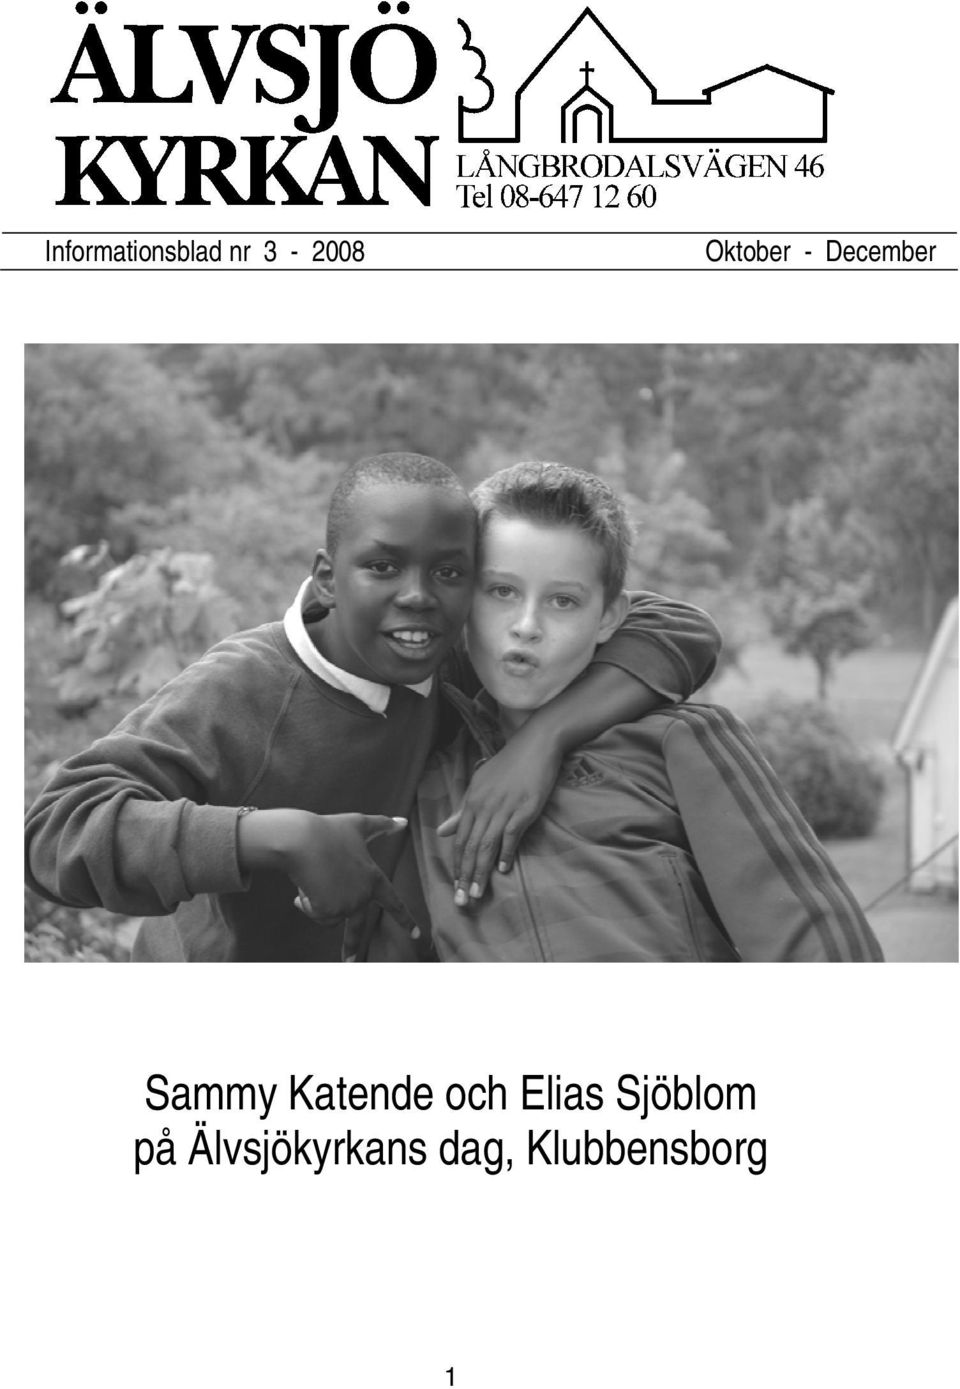 Katende och Elias Sjöblom på